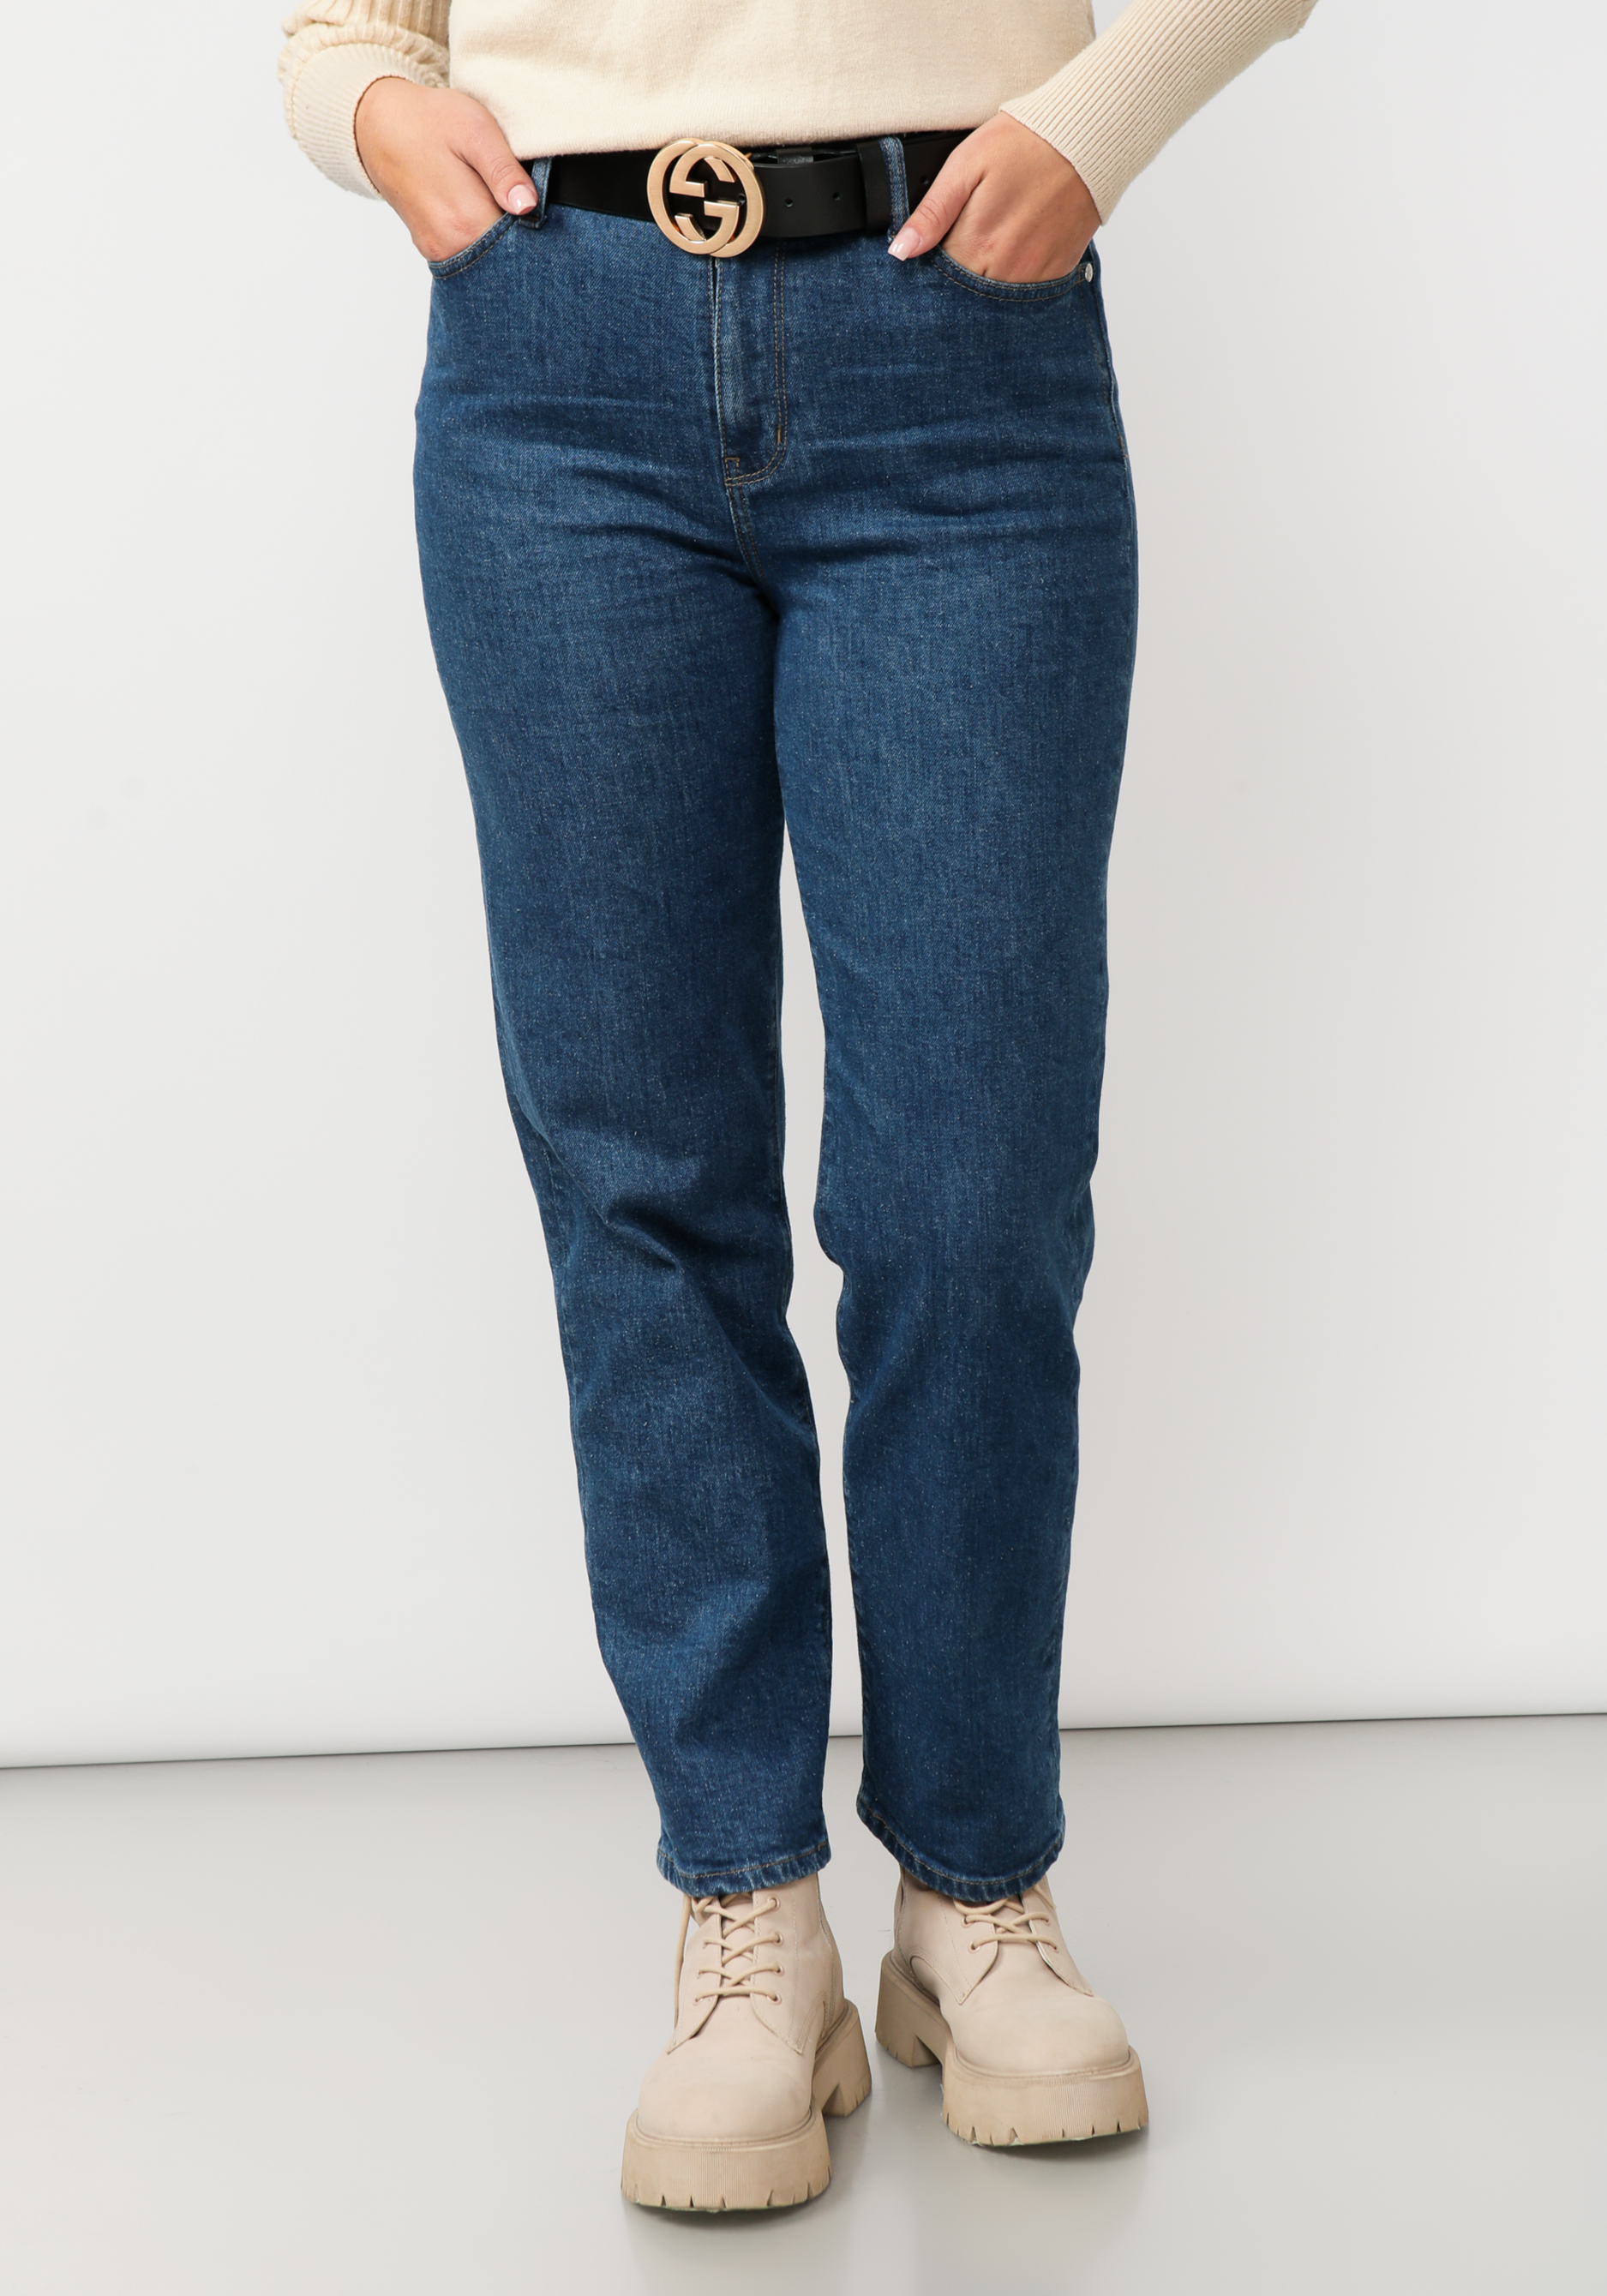 Джинсы прямого кроя с вышивкой на кармане юбка мини джинсы